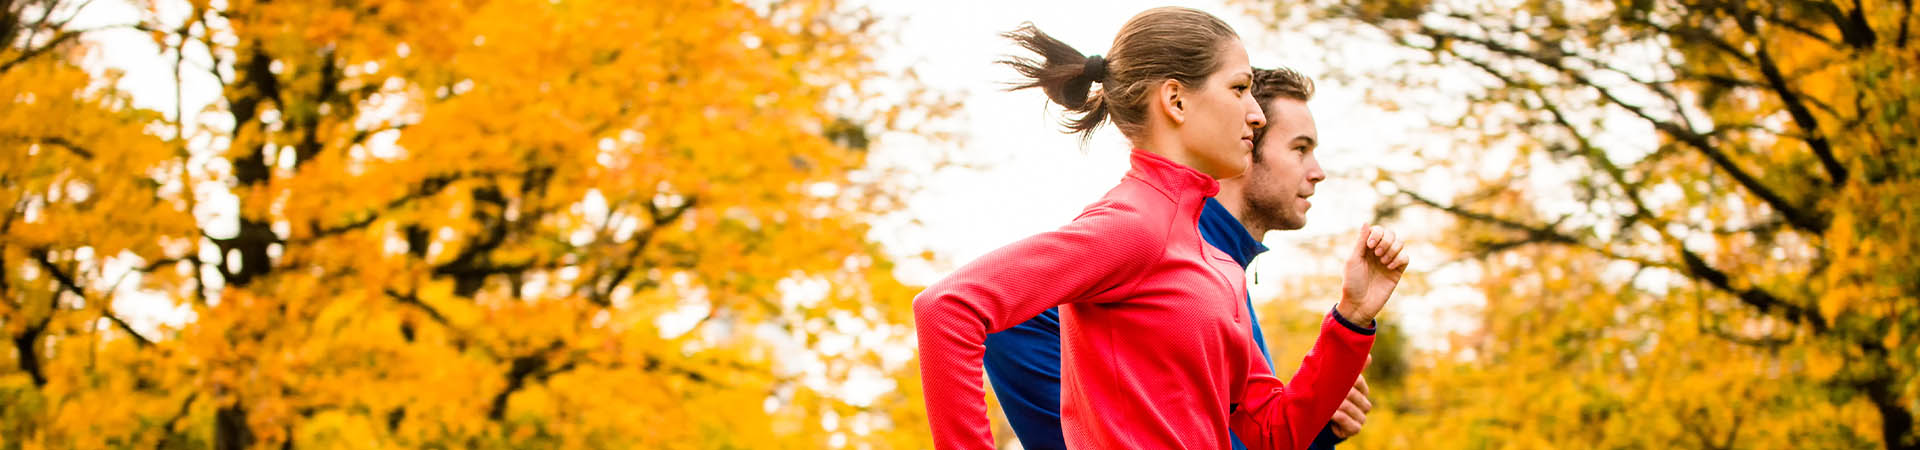 Jogging: benefici per la salute – Un ragazzo e una ragazza corrono nel parco.